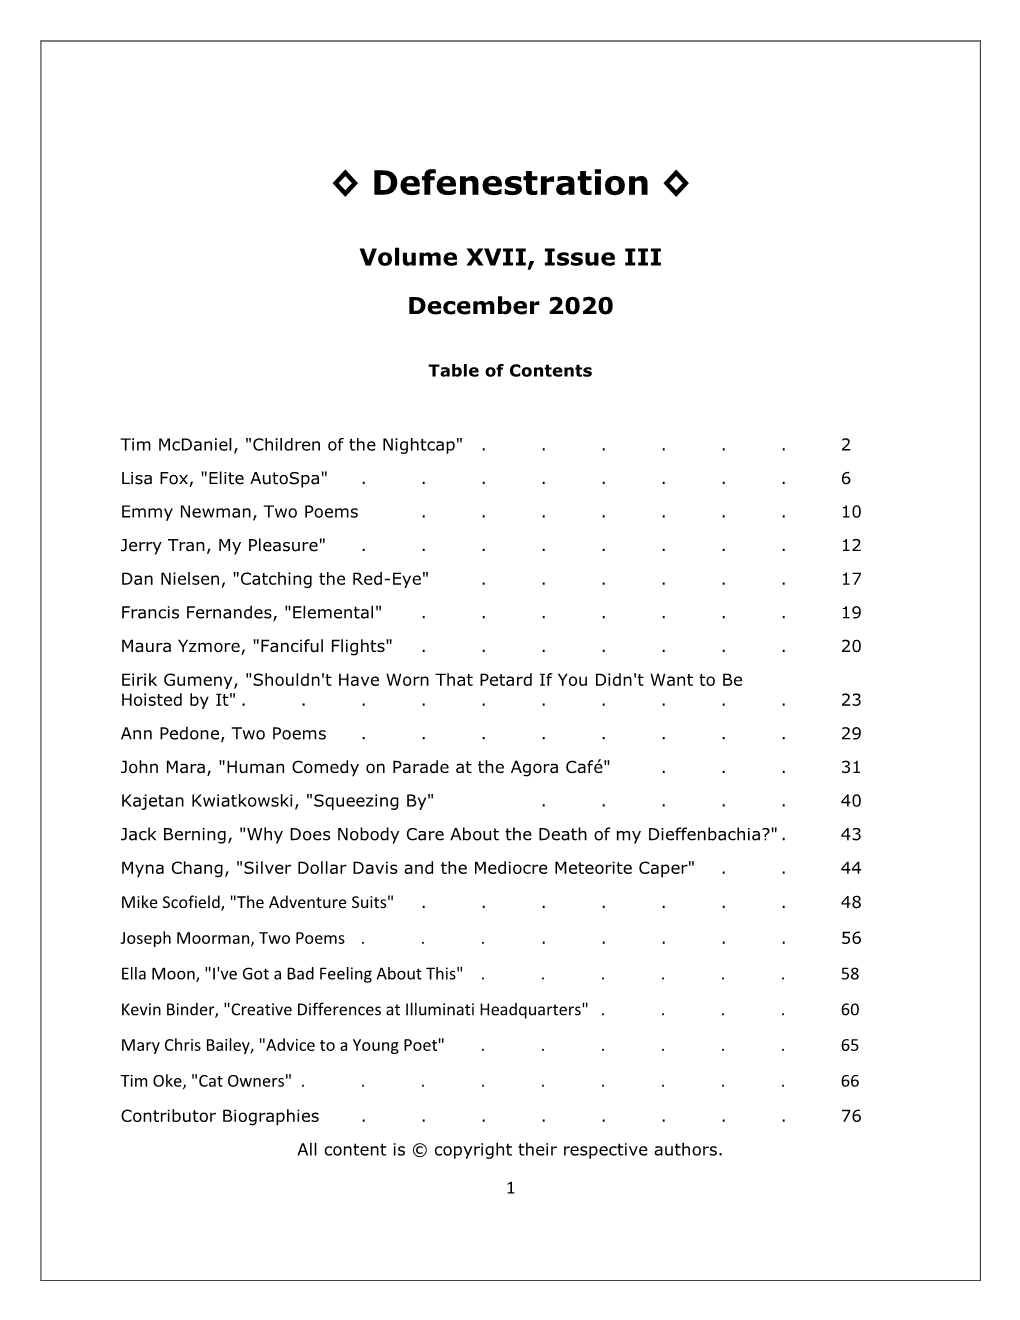 Defenestration, December 2020